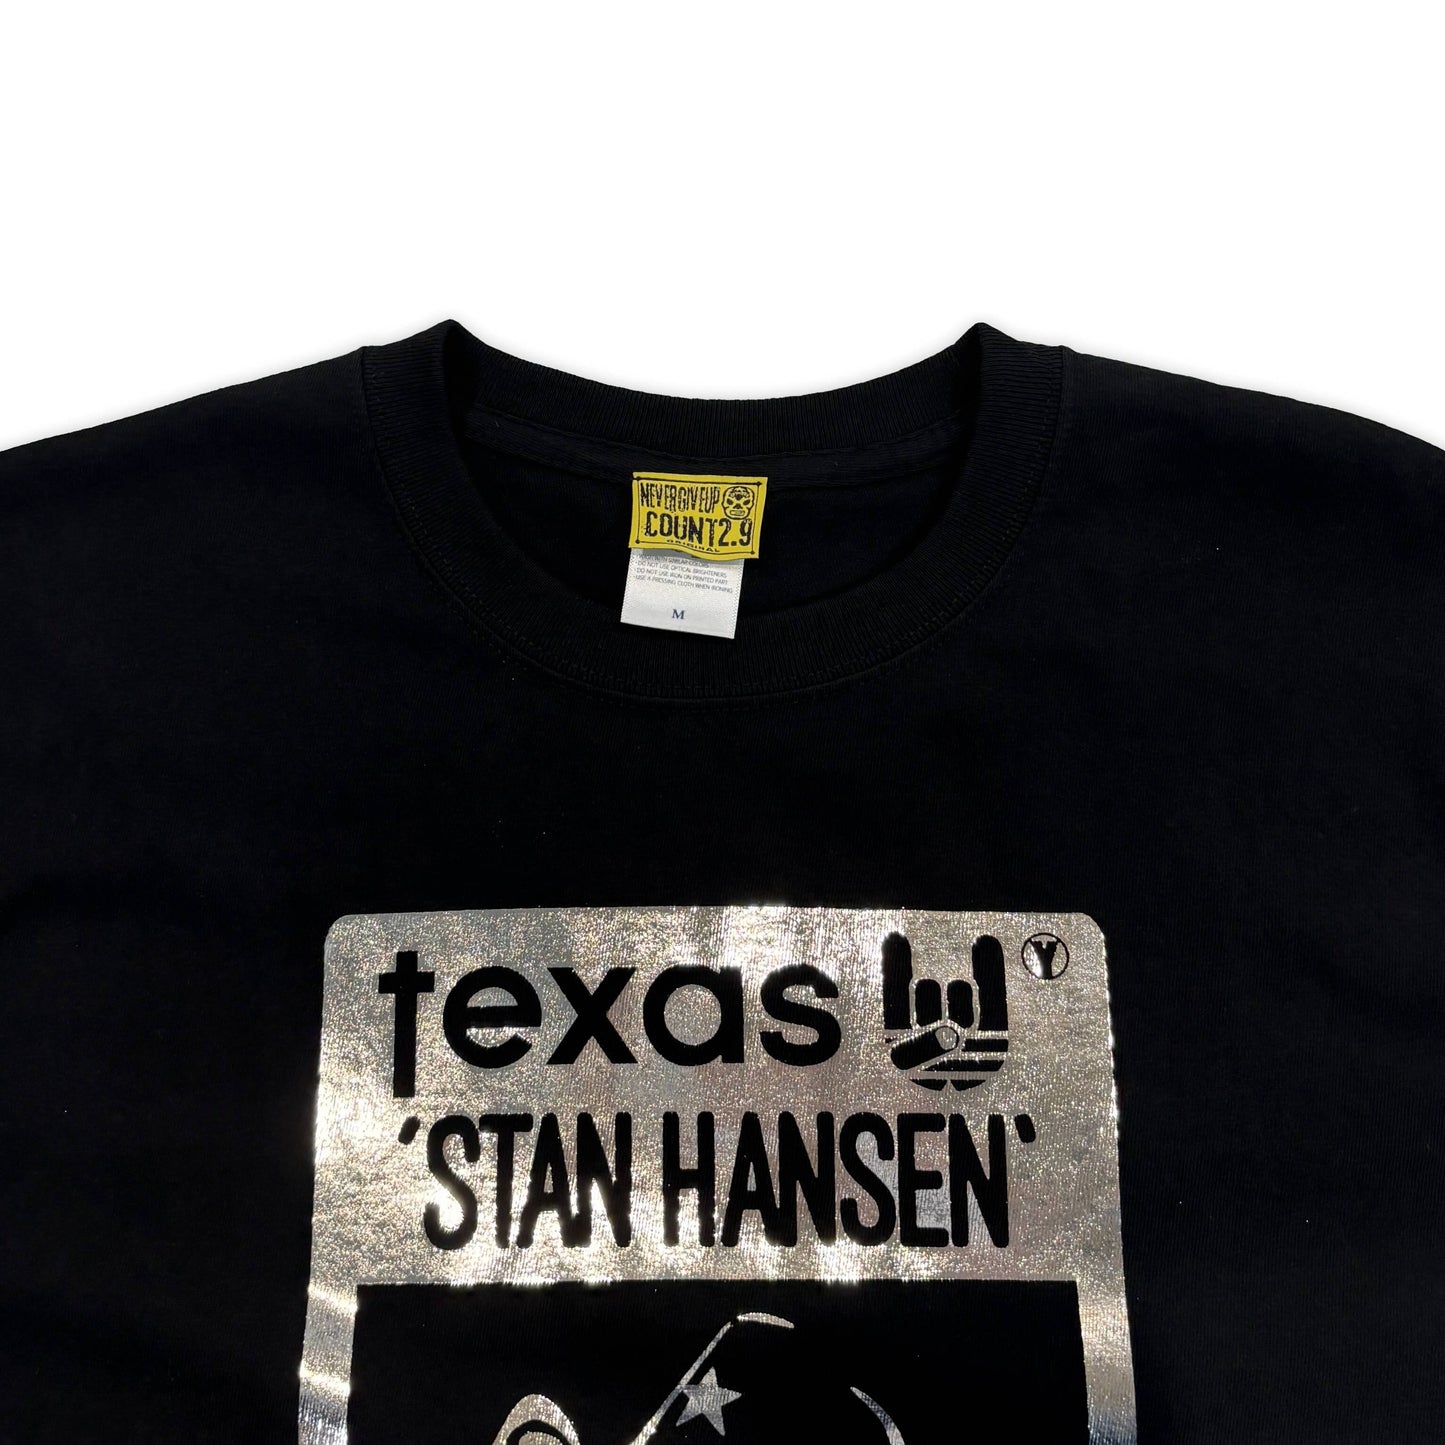 スタンハンセン×Count2.9 Tシャツ (Silver foil 銀箔)